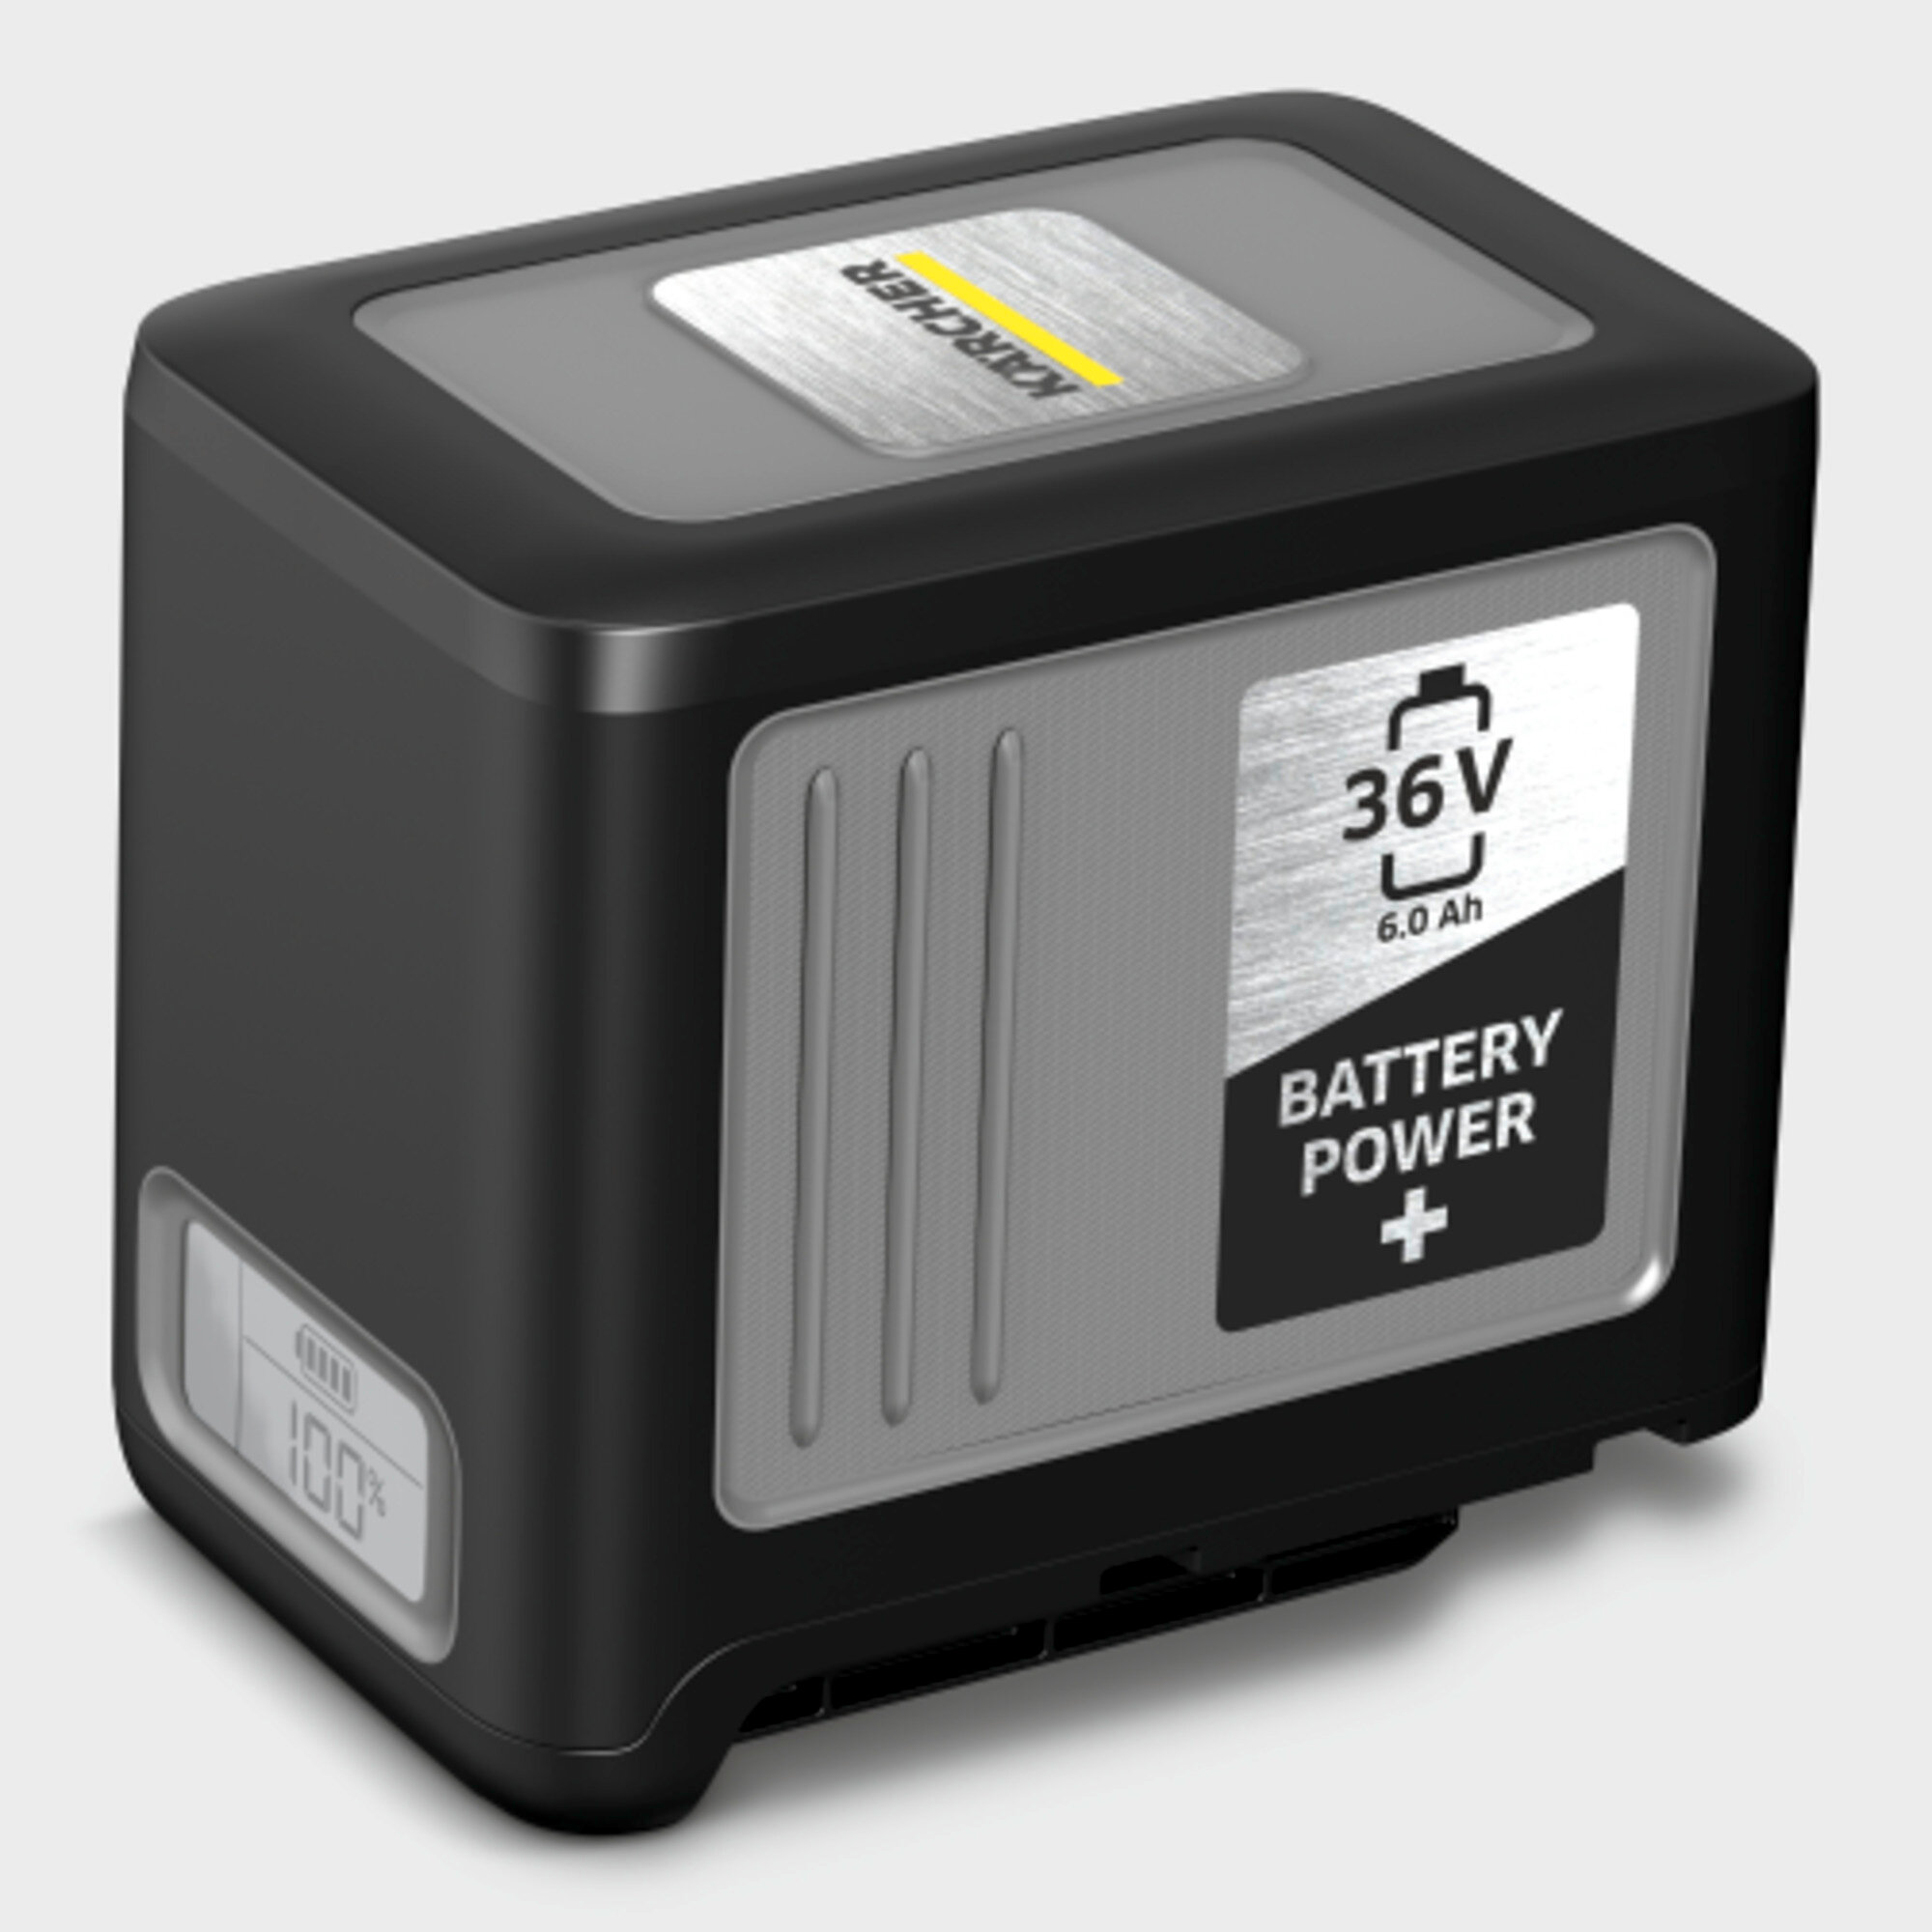  Štartovacia súprava Battery Power+ 36/60: 36 V Kärcher Battery Power + batéria na výmenu